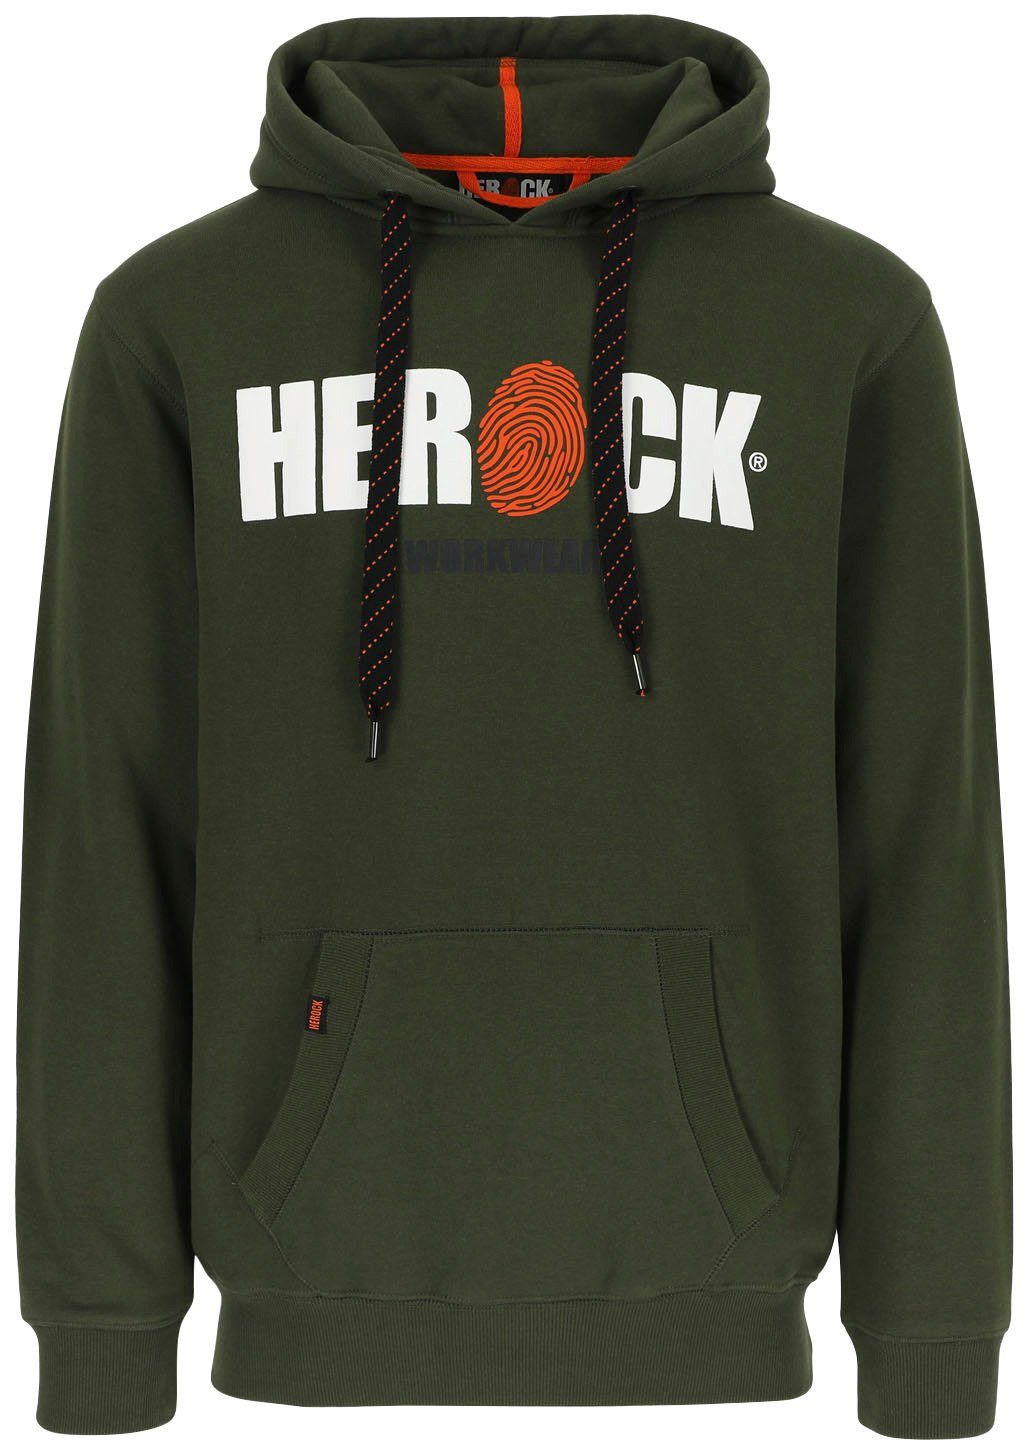 Mit Hoodie weich HERO Herock®-Aufdruck, khaki angenehm sehr Kangurutasche, und Herock